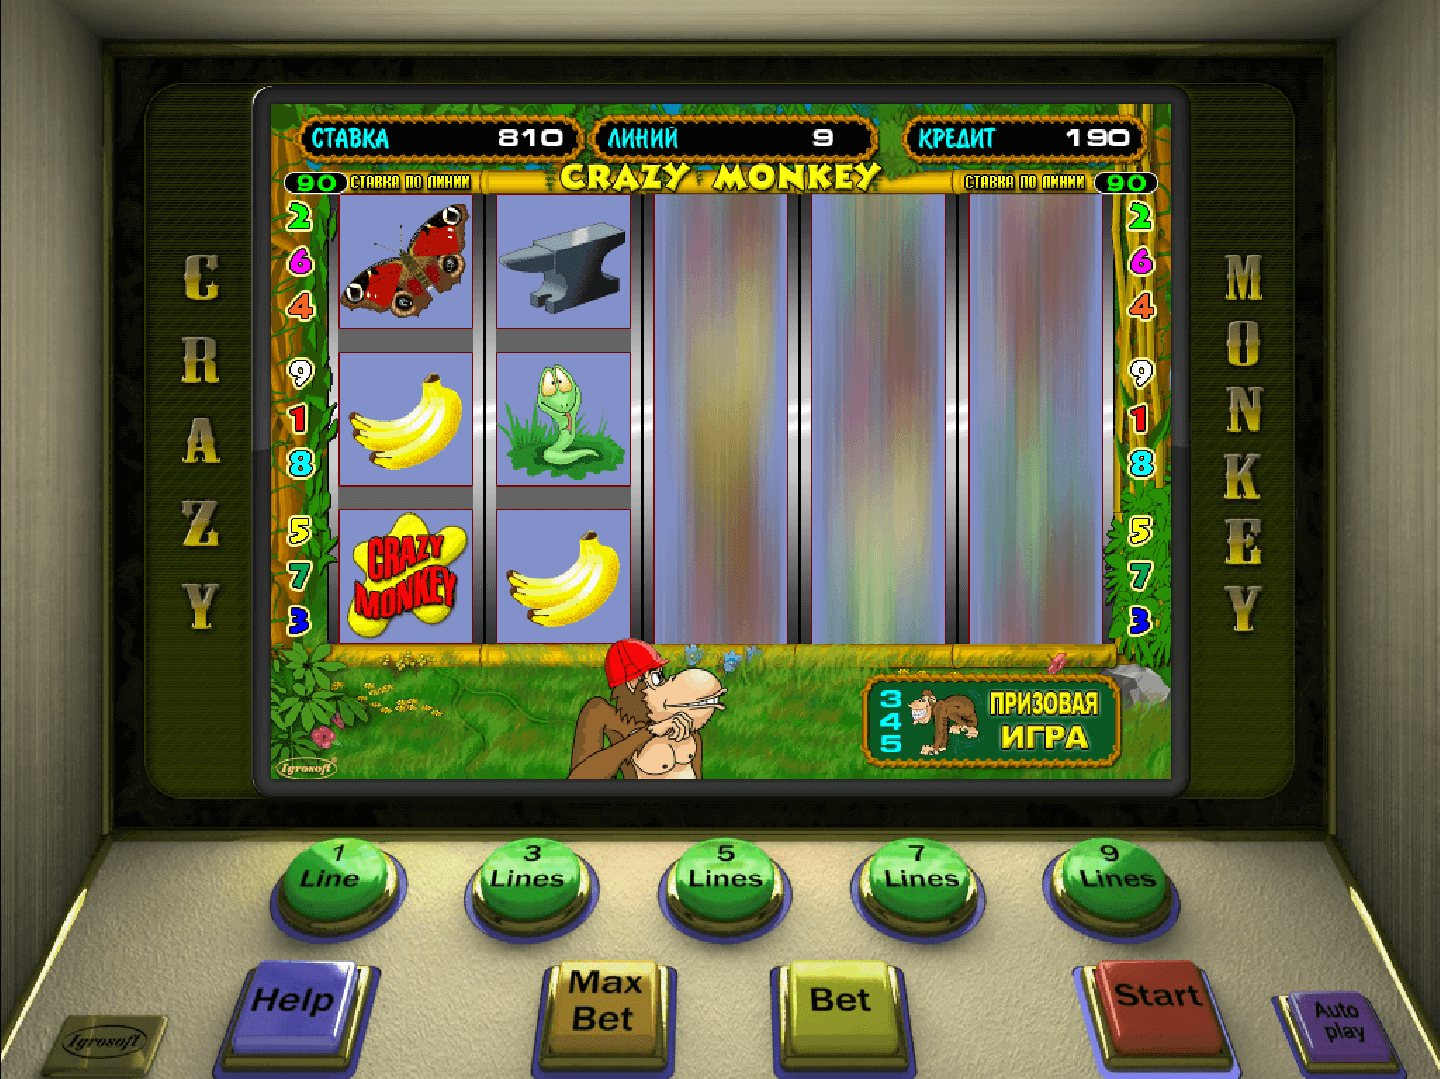 Игра игровые автоматы бесплатно без регистрации казино онлайн получить 777 руб